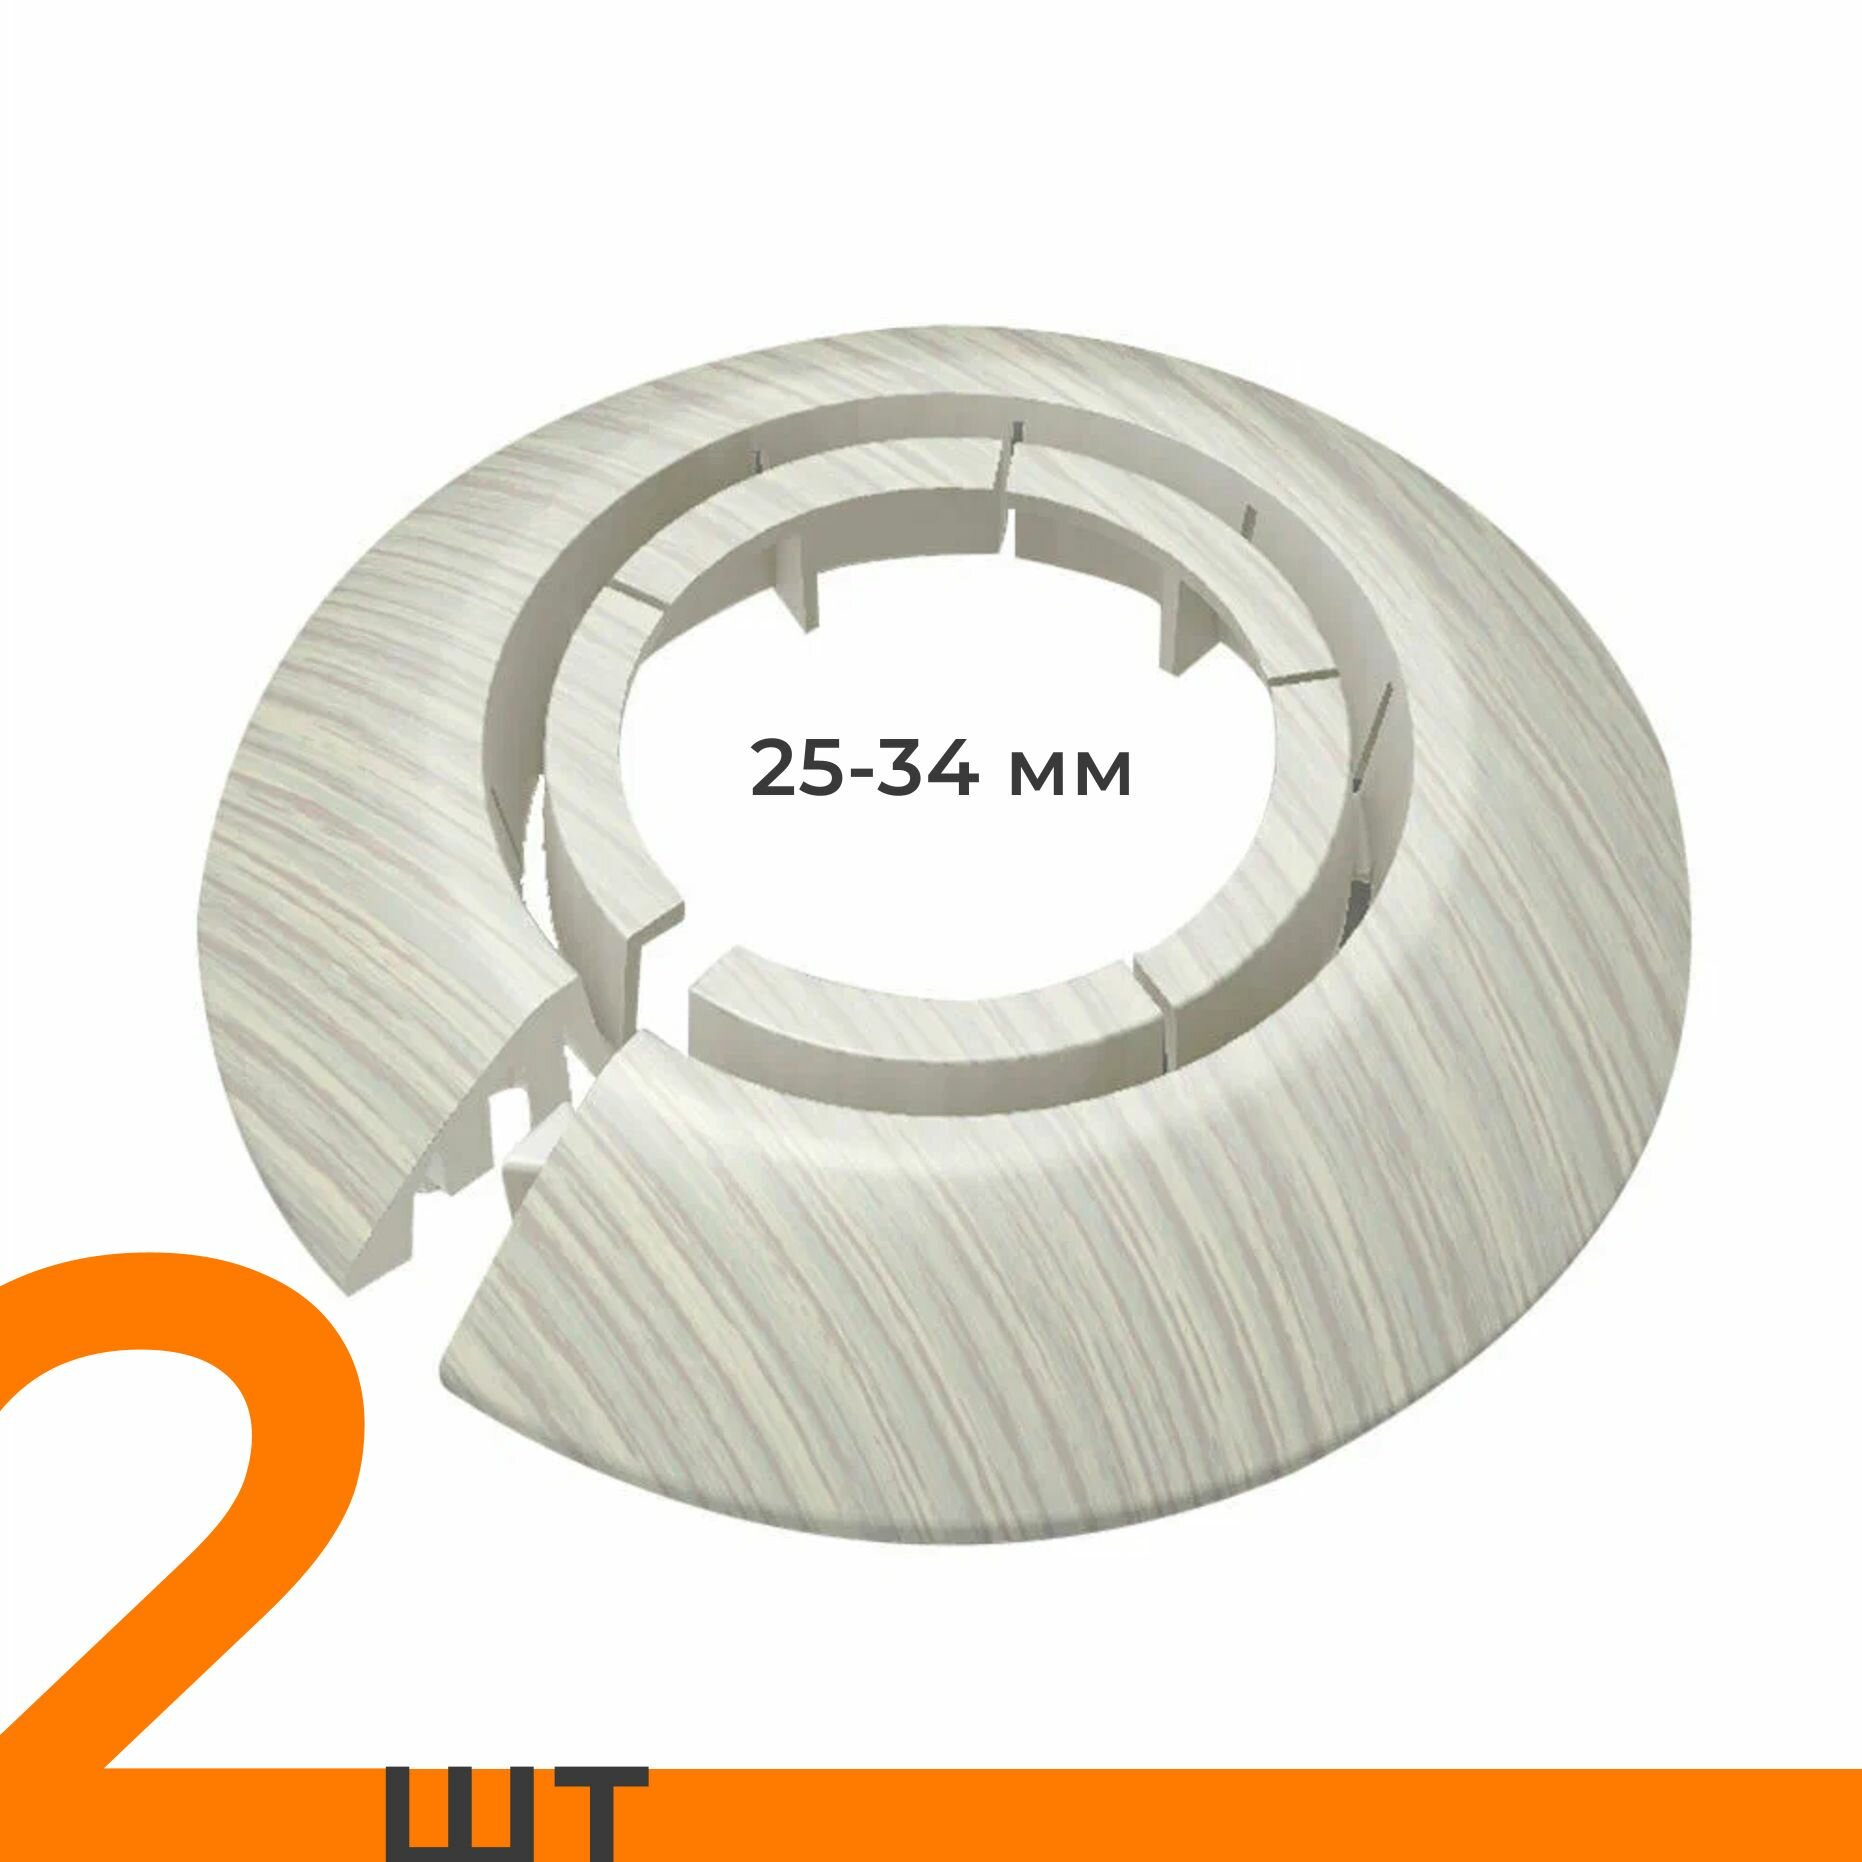 Обвод универсальный IDEAL(Идеал) ясень белый, накладка (розетта) для труб 25 - 34 мм - 2 шт.